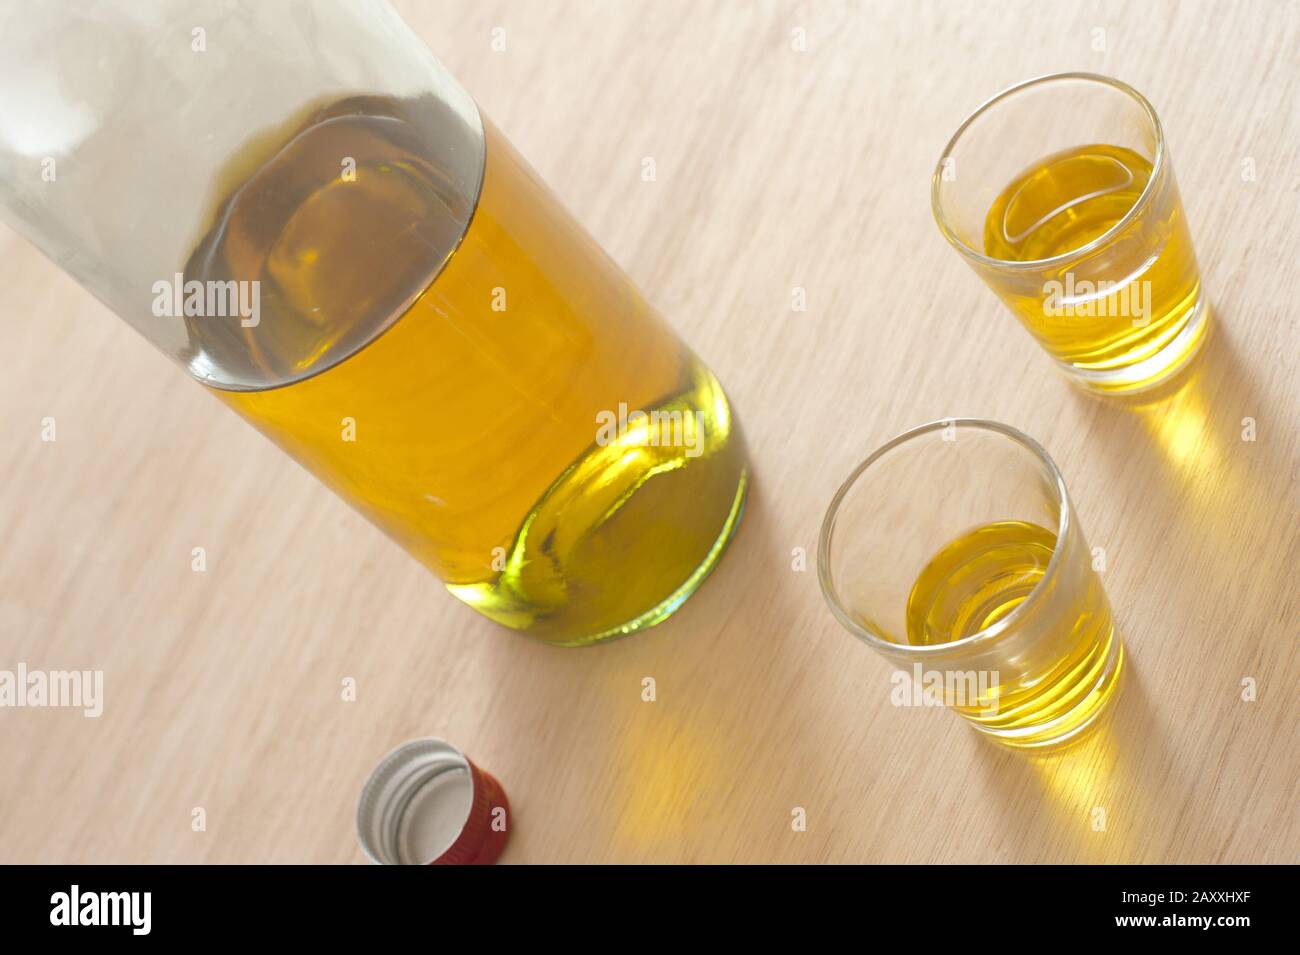 Spirituosen werden in Schussgläsern mit einer unbeschrifteten Flasche Alkohol serviert, möglicherweise Scotch oder Whisky in einem gekippten Winkel Stockfoto